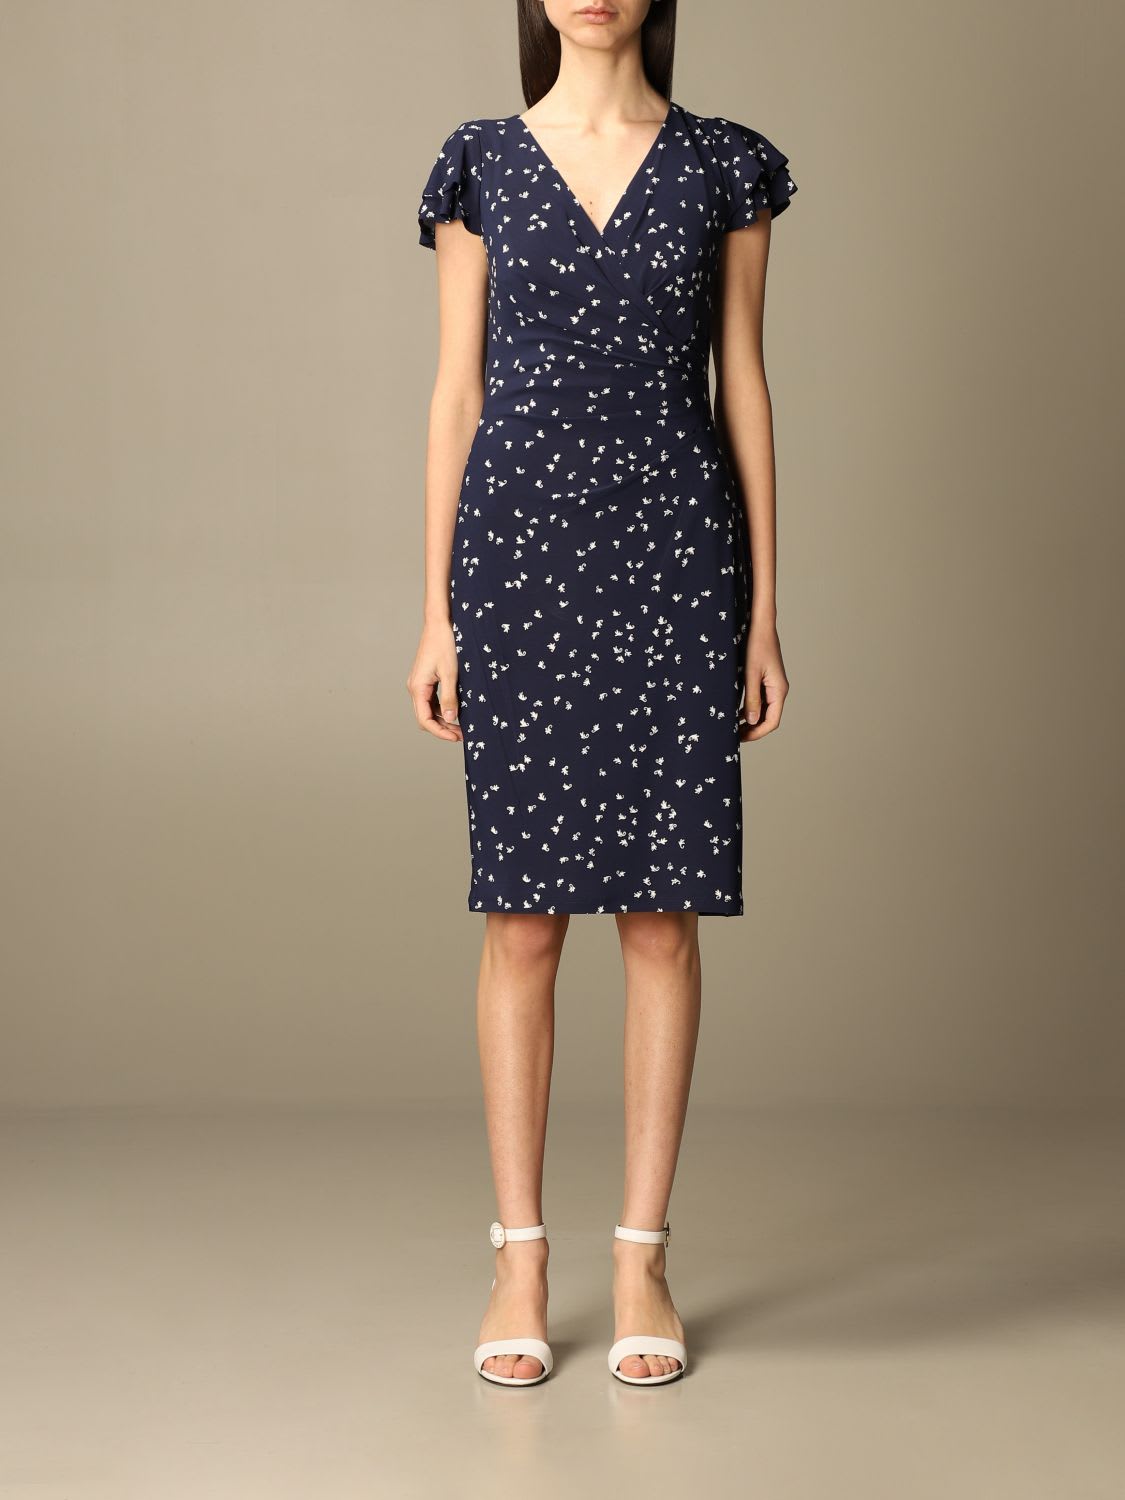 Photo of  Lauren Ralph Lauren Dress Lauren Ralph Lauren Patterned Dress- shop Ralph Lauren Dresses online sales